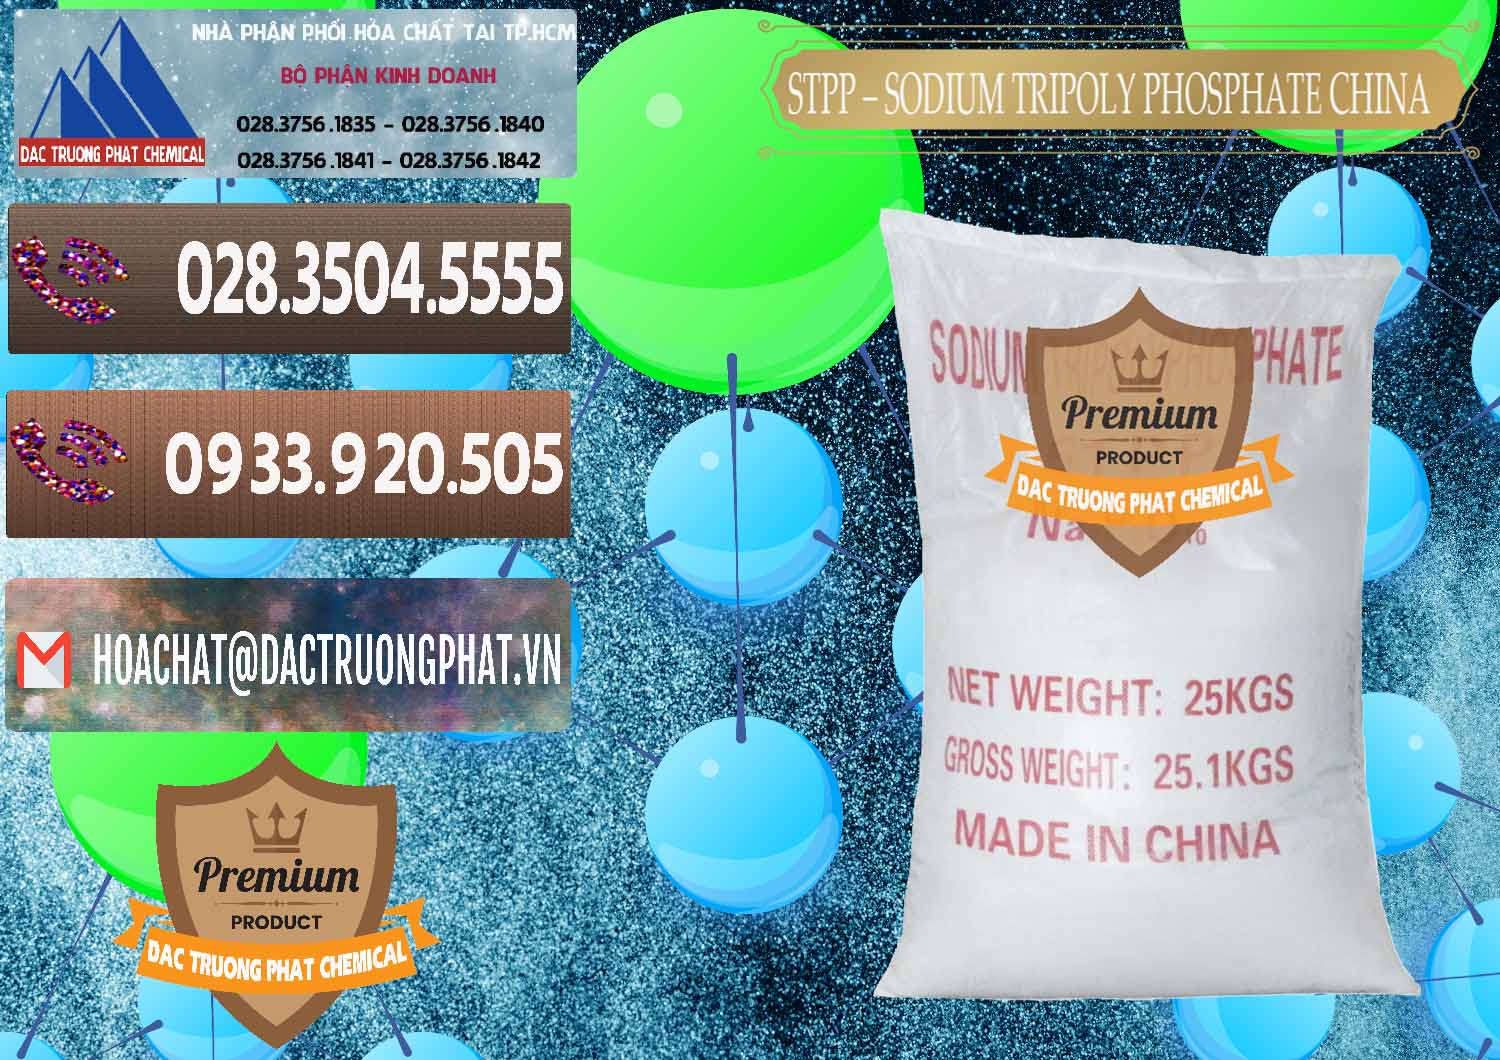 Chuyên phân phối _ bán Sodium Tripoly Phosphate - STPP 96% Chữ Đỏ Trung Quốc China - 0155 - Nơi chuyên phân phối & cung ứng hóa chất tại TP.HCM - hoachatviet.net